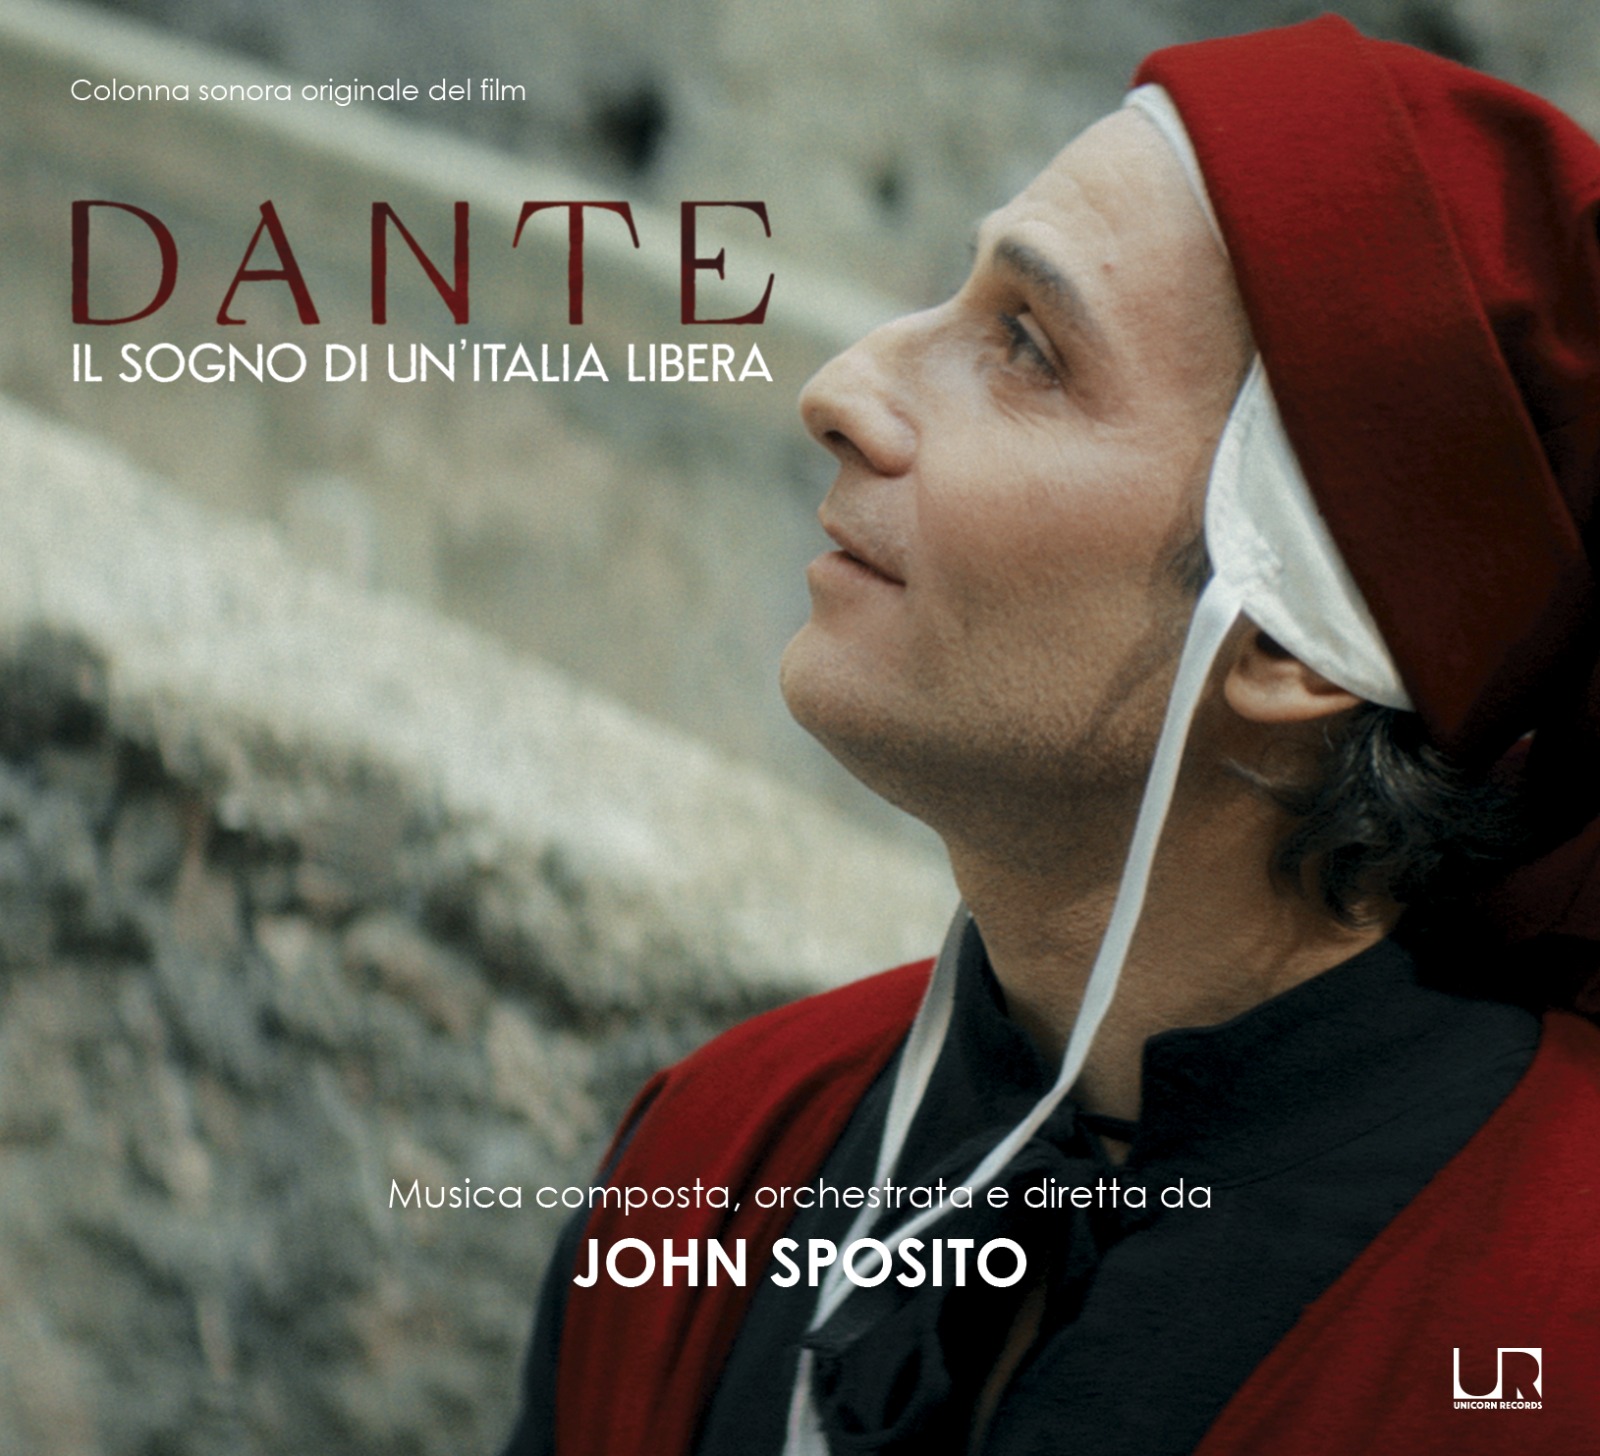 Dante il sogno di un'Italia libera